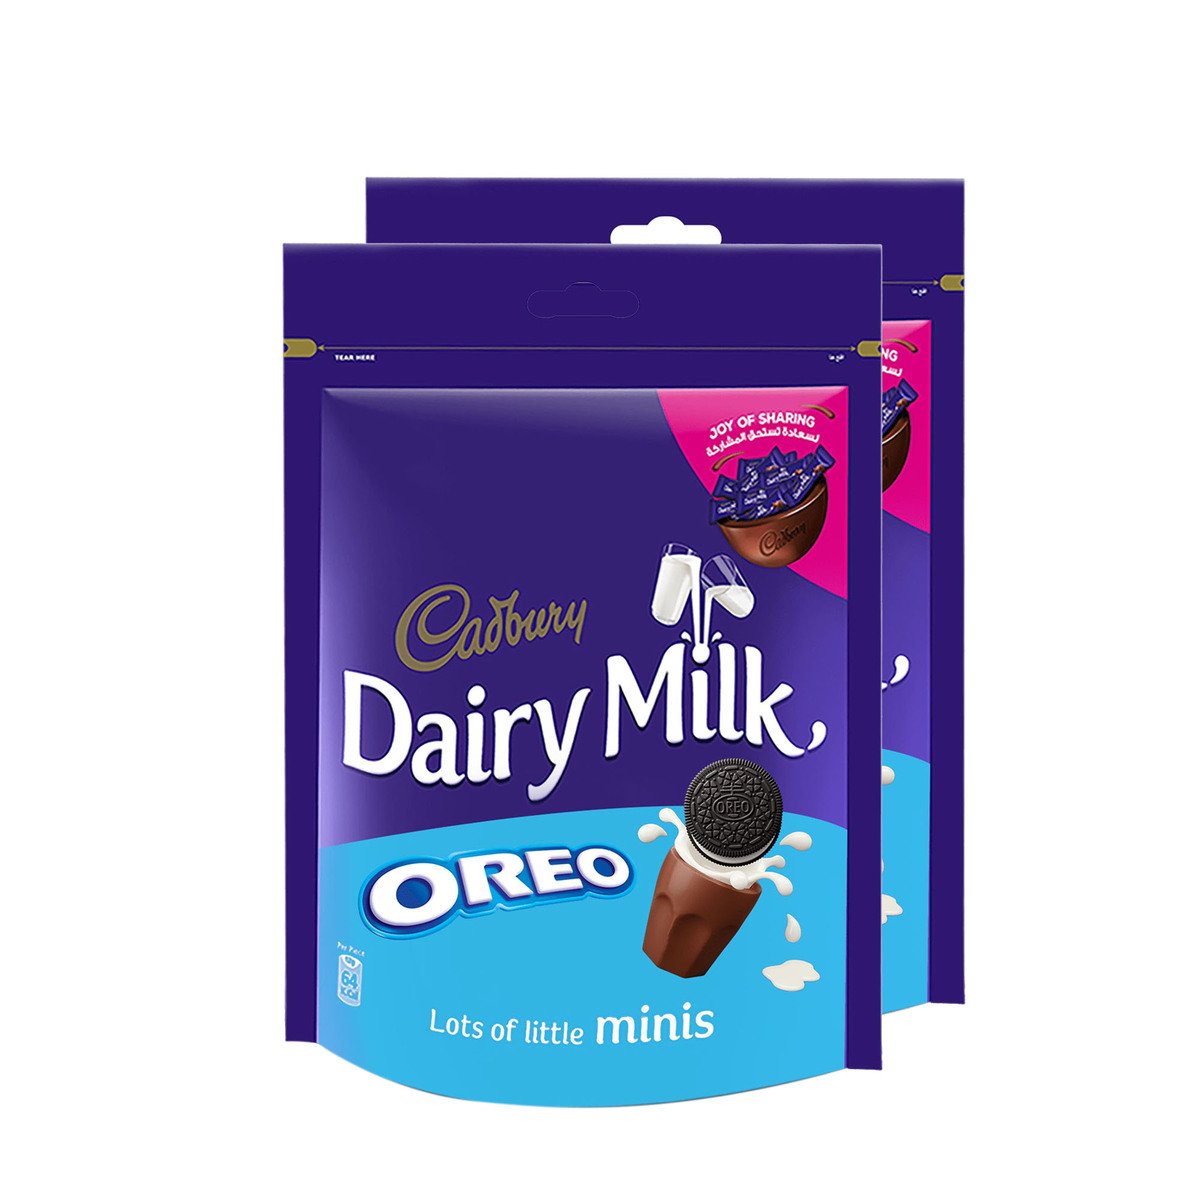 Cadbury Dairy Milk Oreo 2 x 188 g